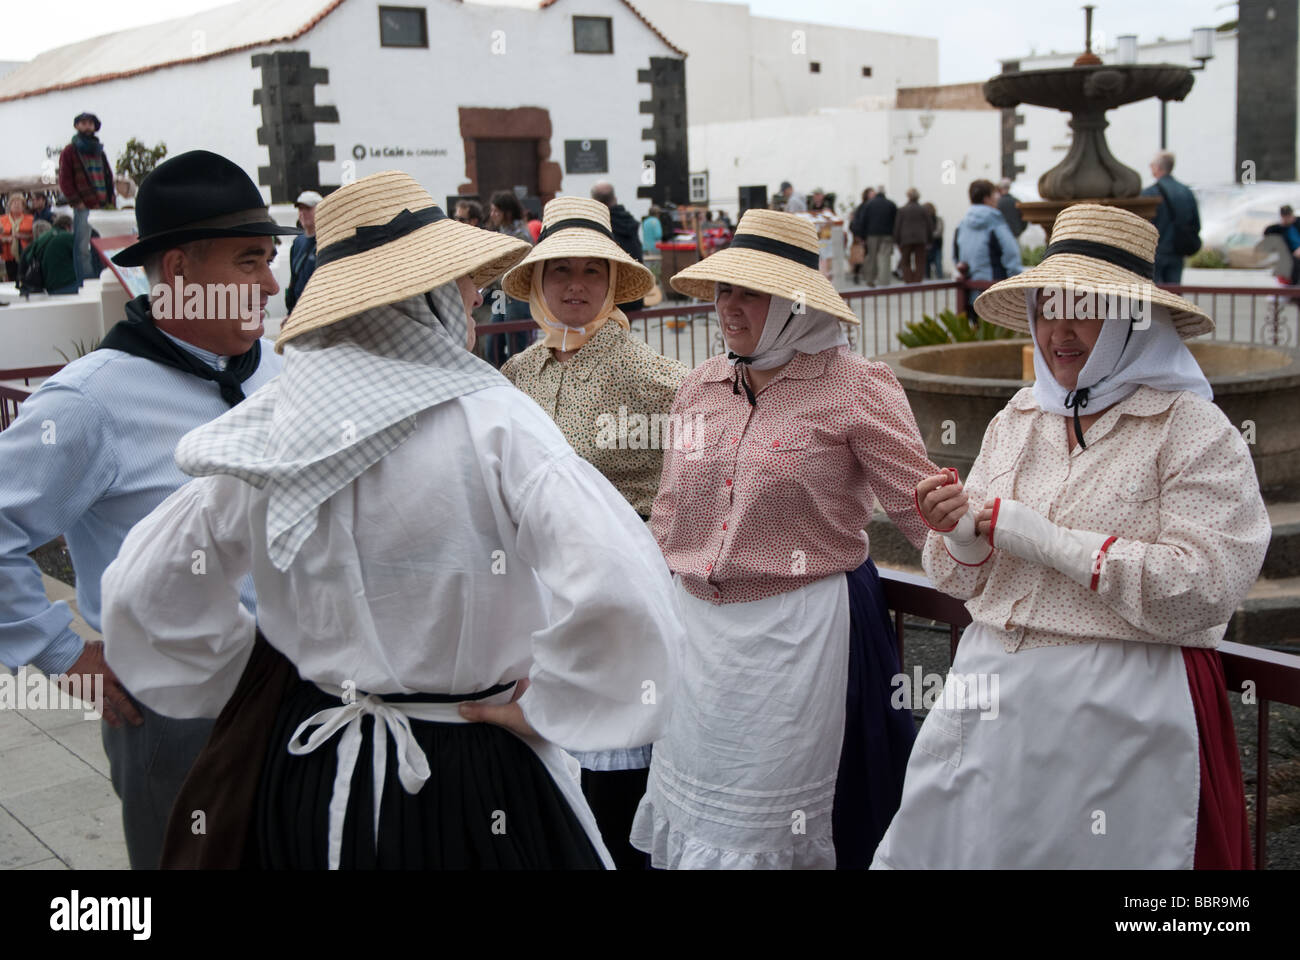 Folkloristische Tanzgruppe tragen traditionelle Kleider Teguise  Lanzarote-Kanarische Inseln-Spanien Stockfotografie - Alamy